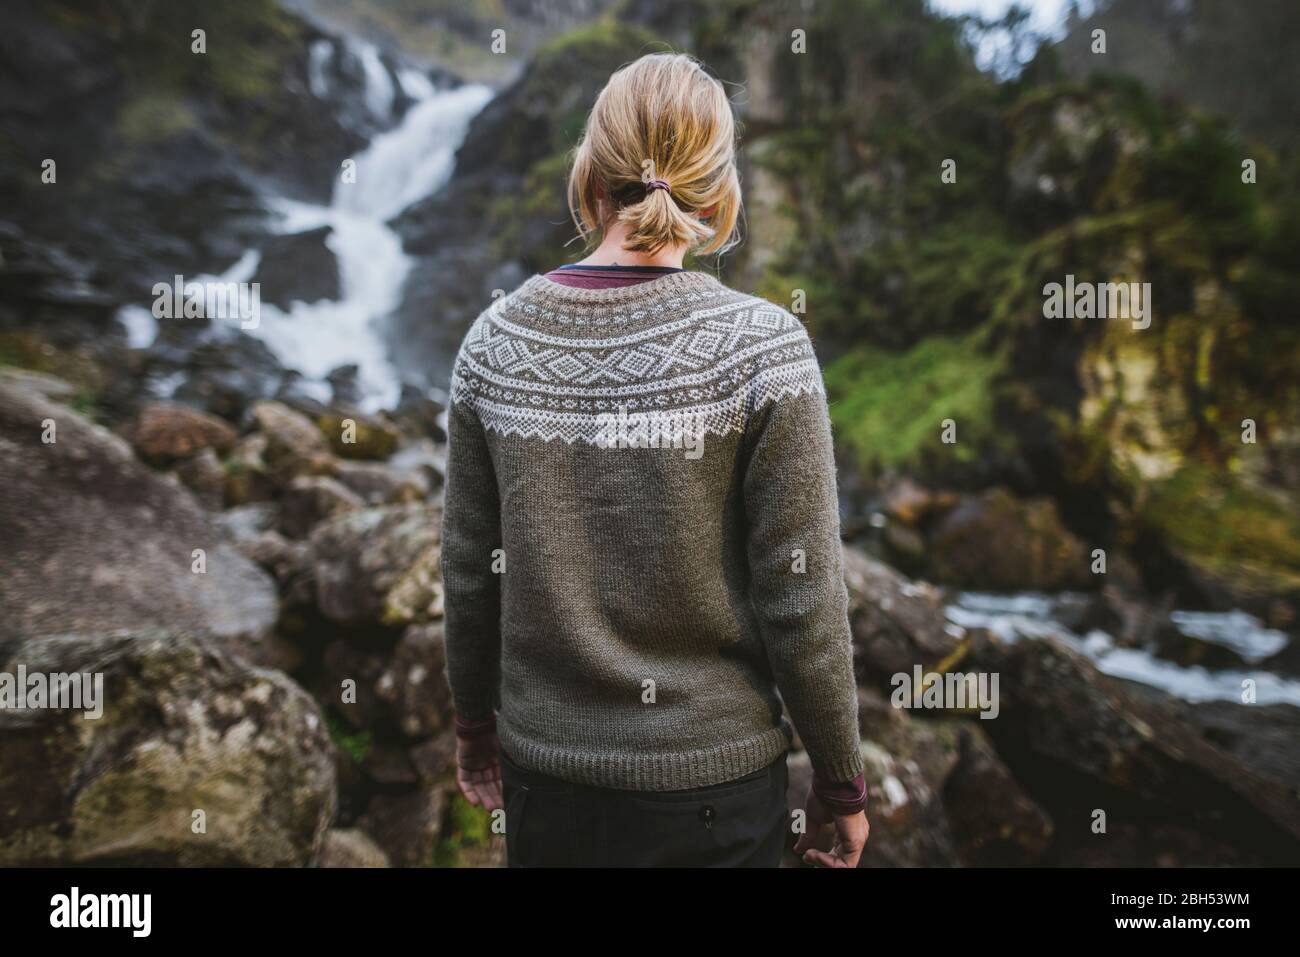 Woman wearing sweater by Latefossen waterfall in Vestland, Norway Stock Photo